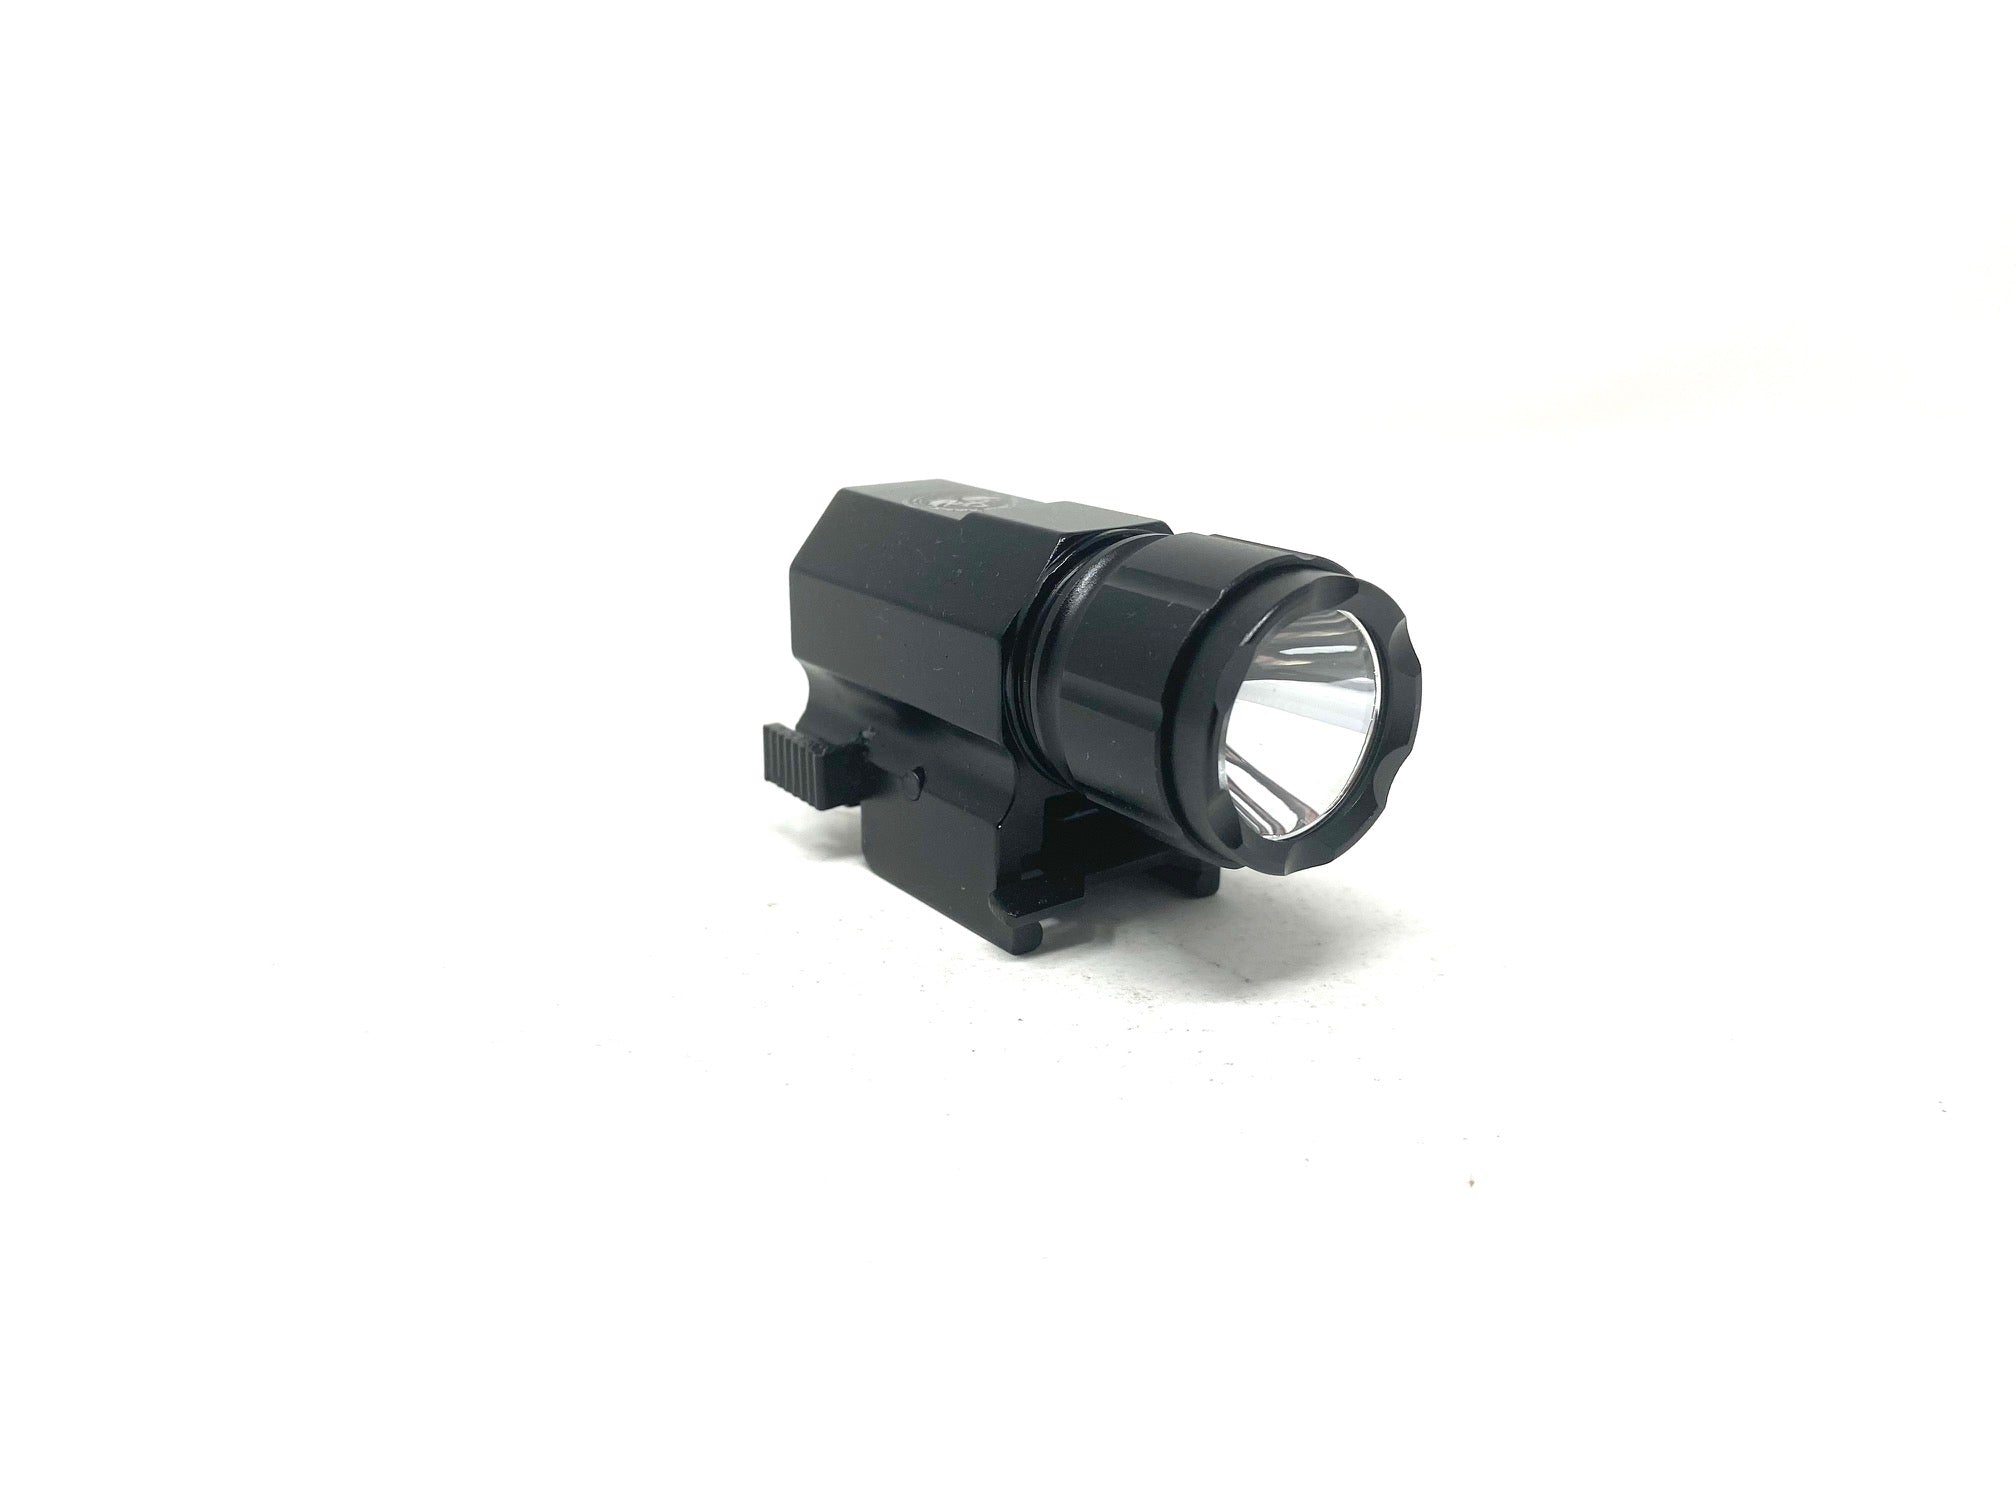 HPA 300 Lumen Pistol Flashlight with Strobe - ssairsoft